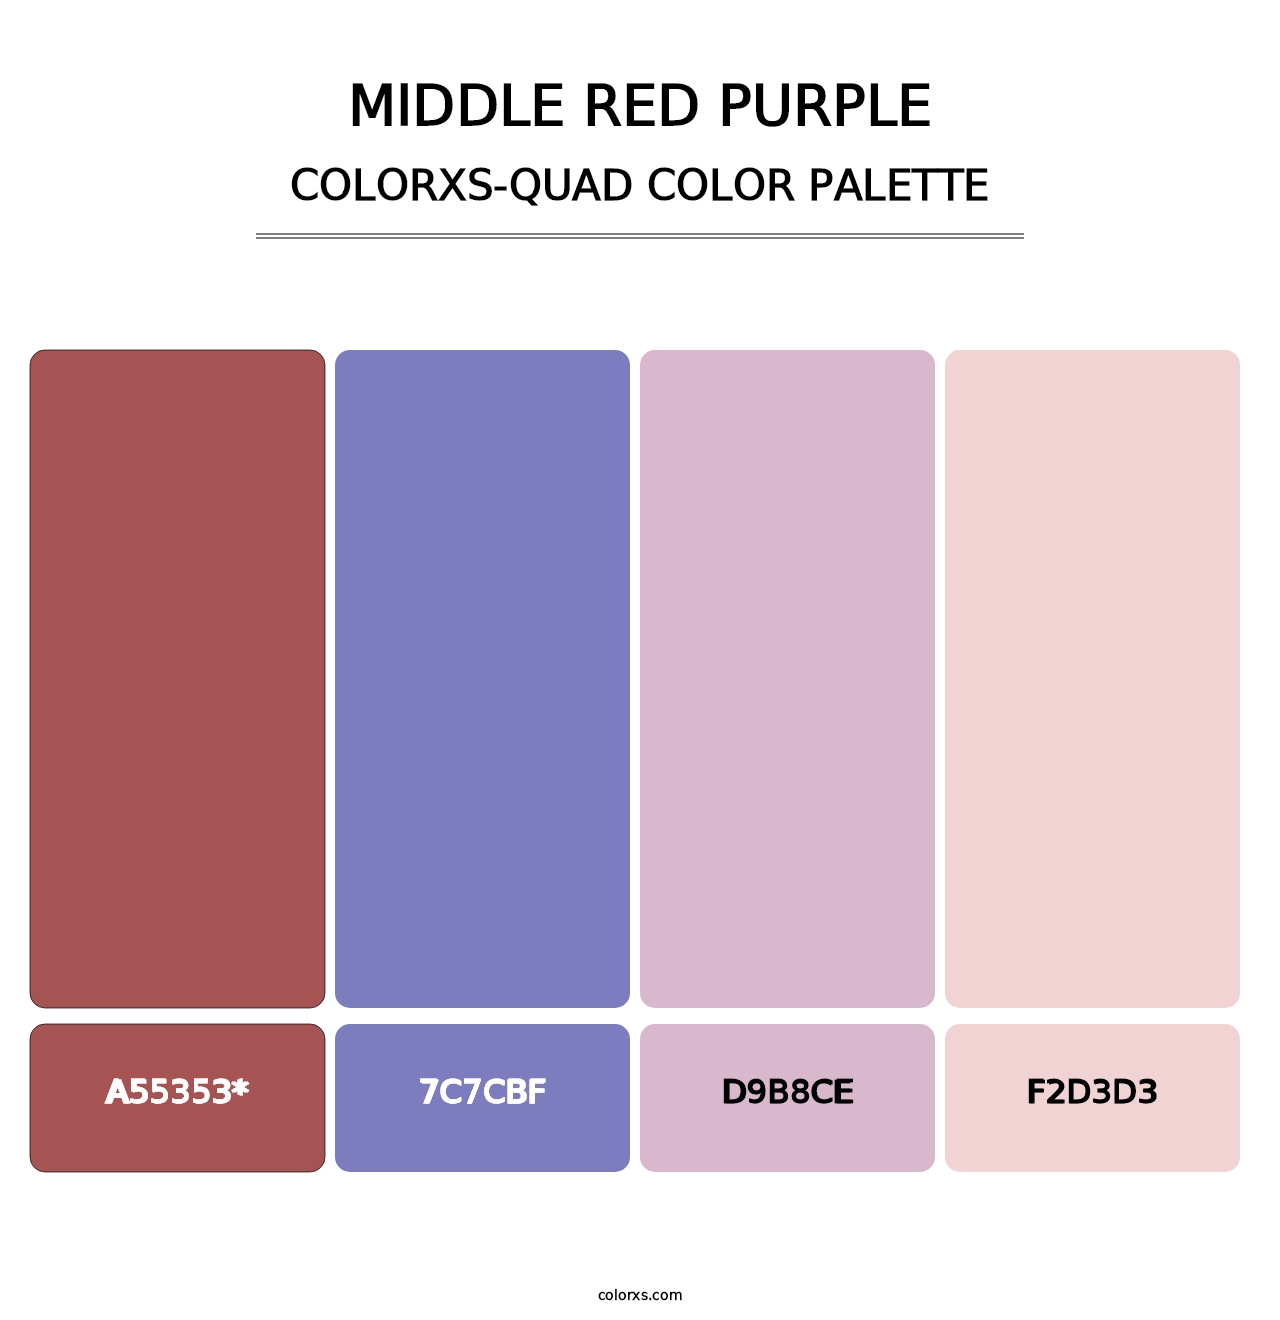 Middle Red Purple - Colorxs Quad Palette